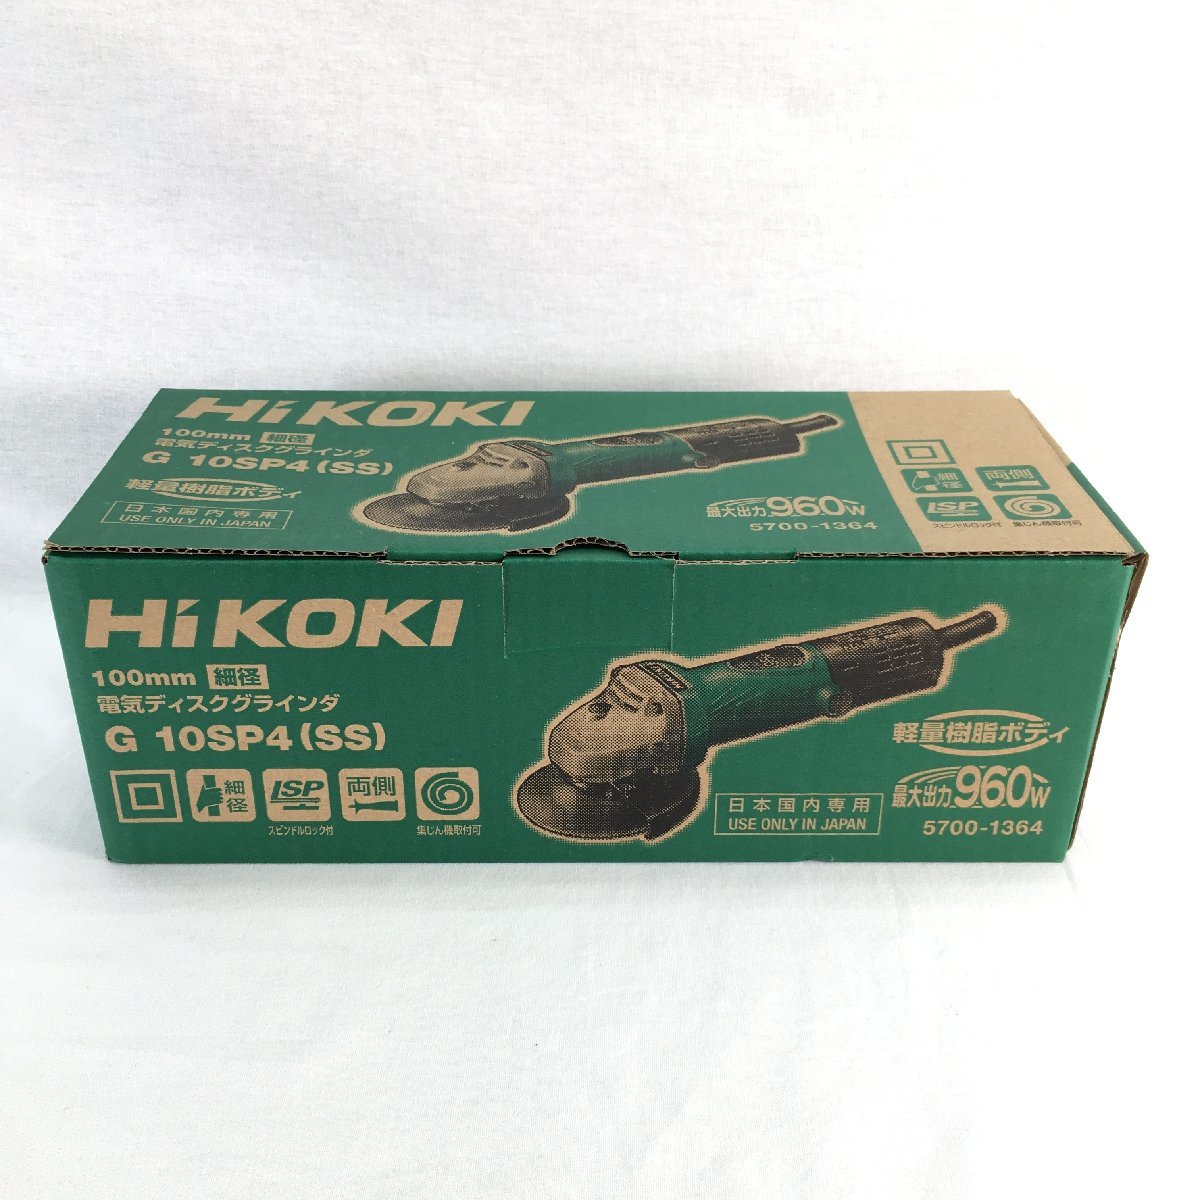 『中古品』HiKOKI ハイコーキ ディスクグラインダー G10SP4(SS) ②